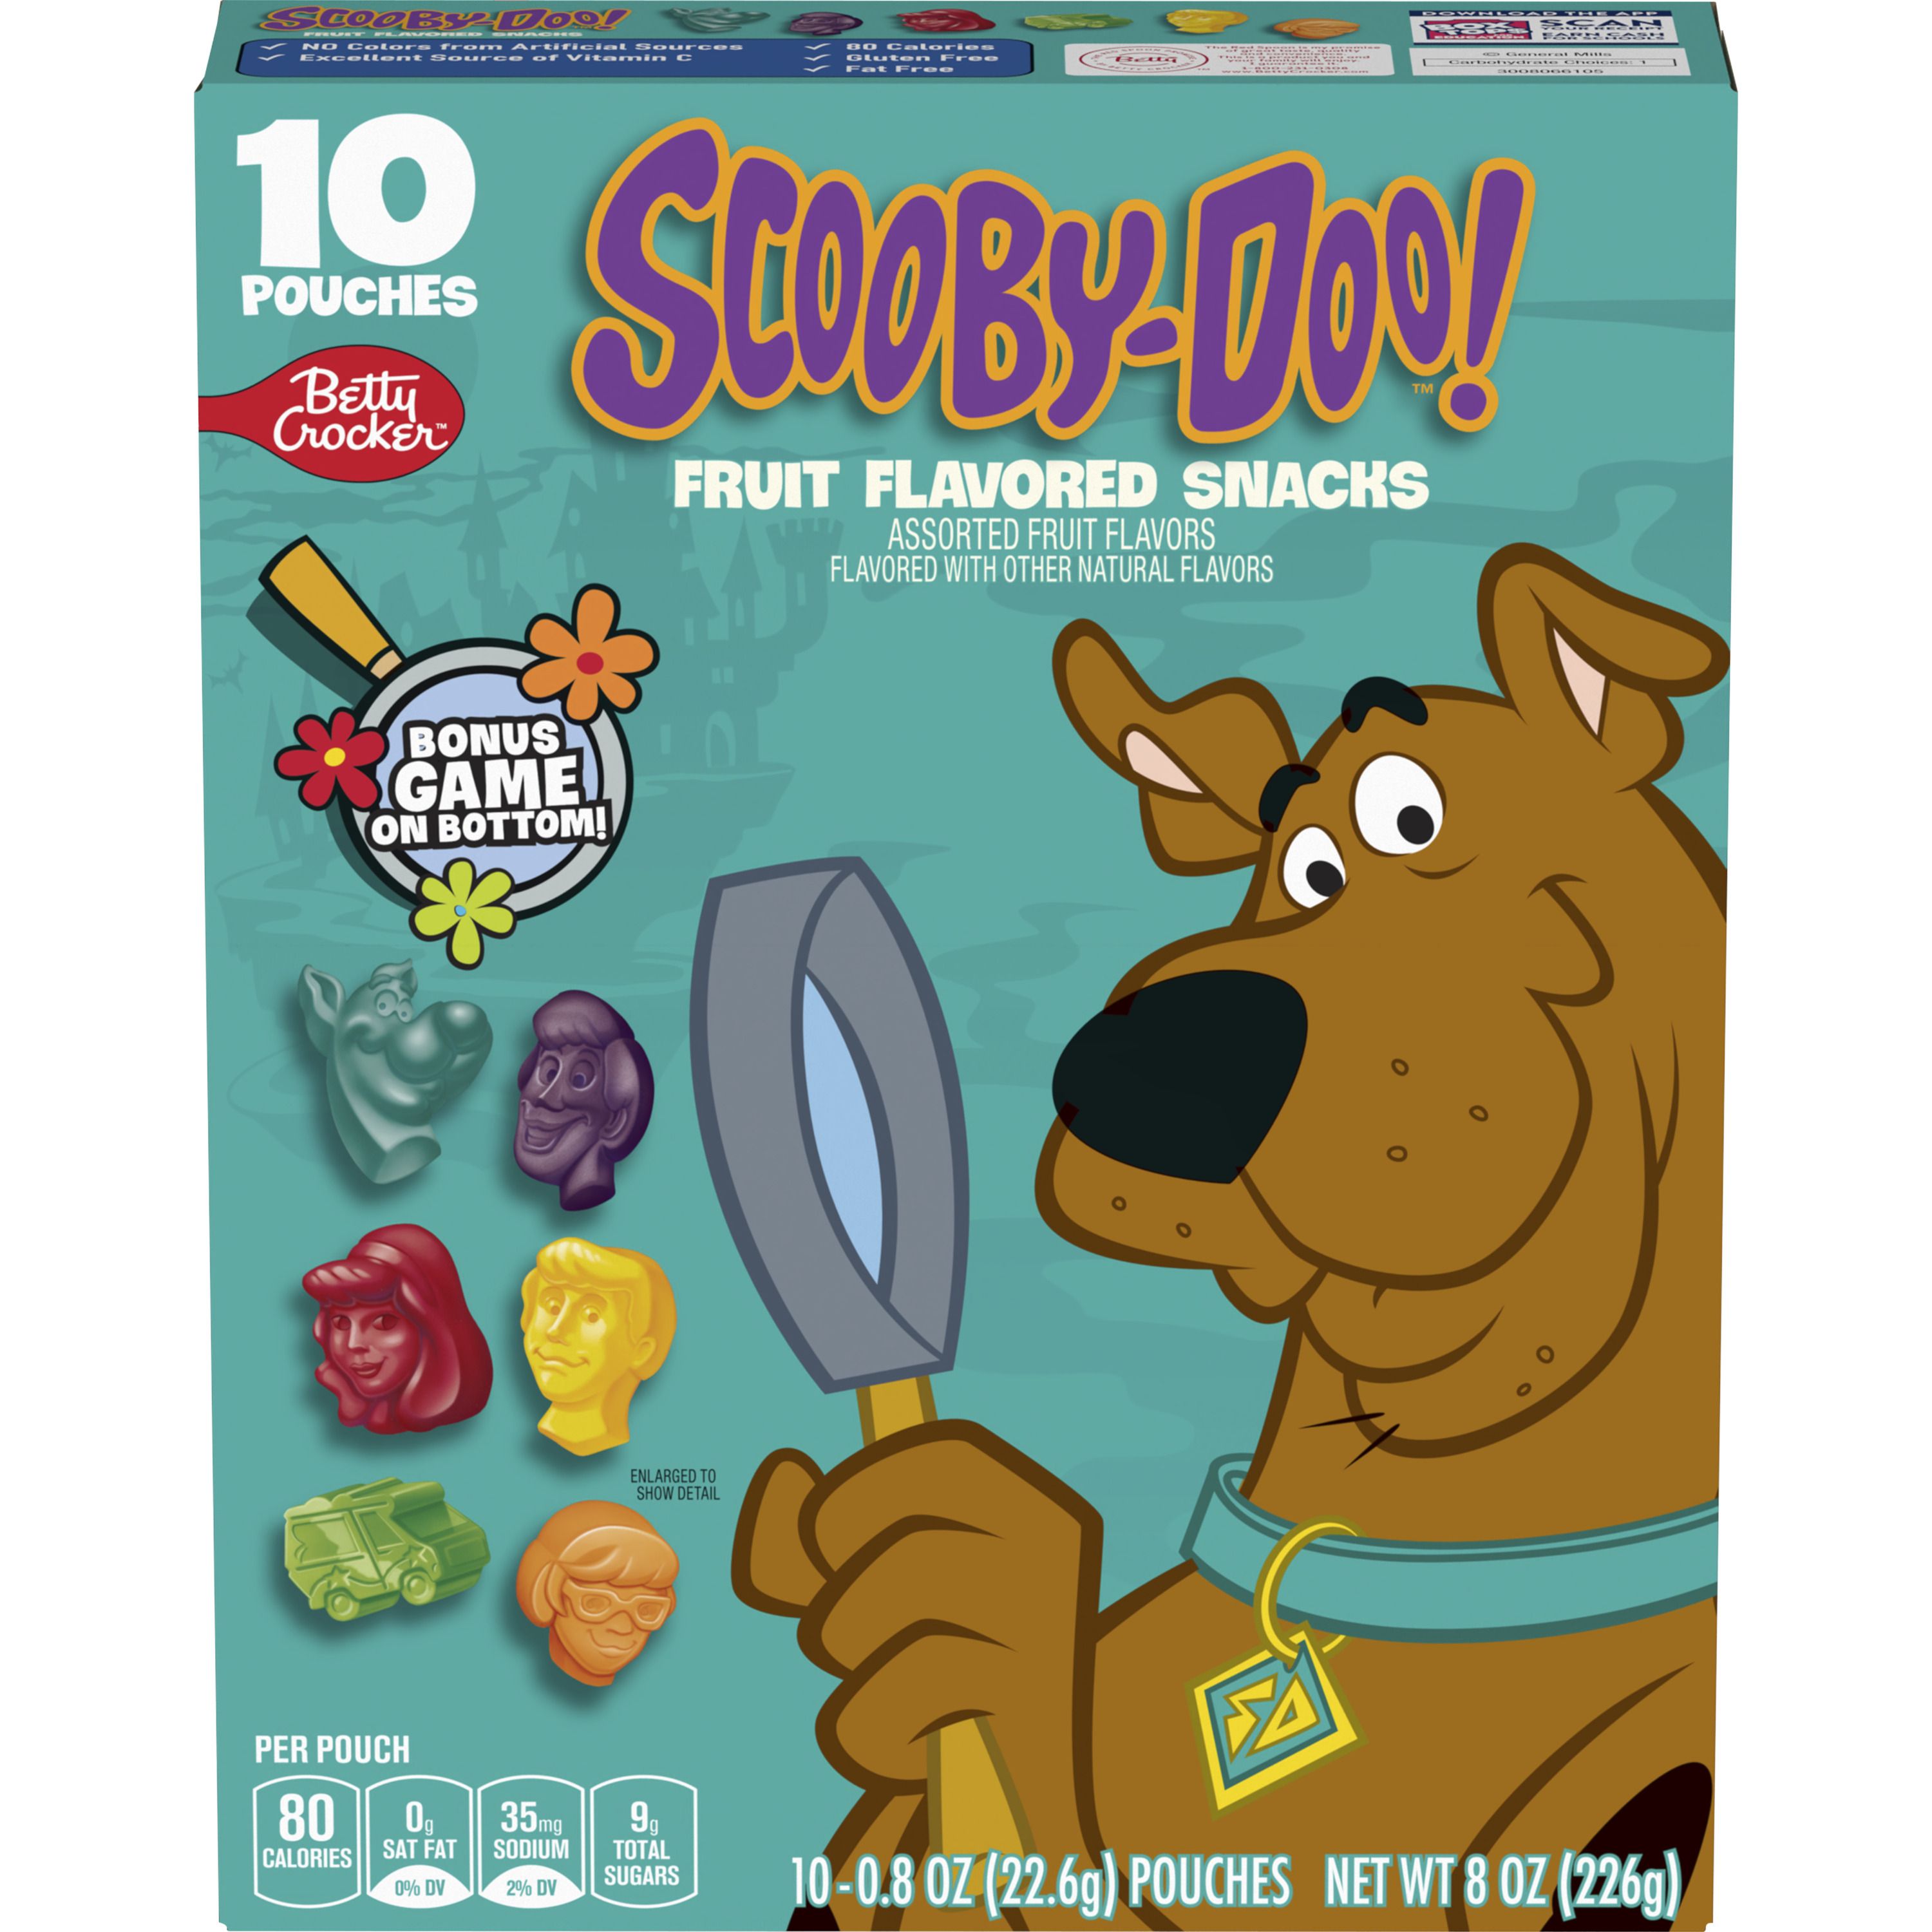 Betty Crocker™ Fruit Flavored Snacks Scooby Doo - Front